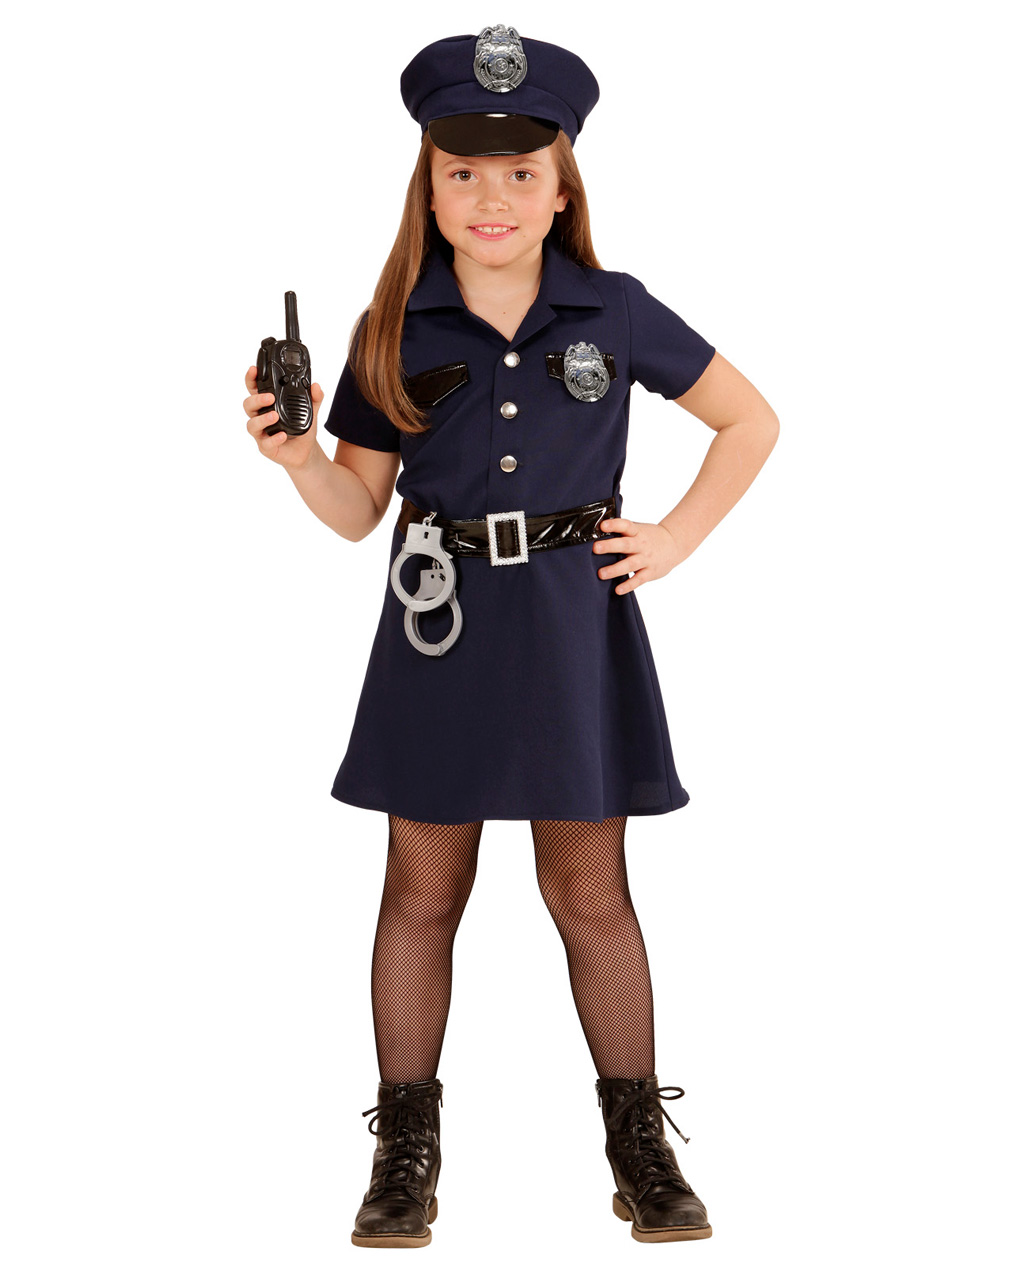 POLIZEI MÄDCHEN Police Girl Kinder Kostüm Polizistin Cop #4005 Größe 116 